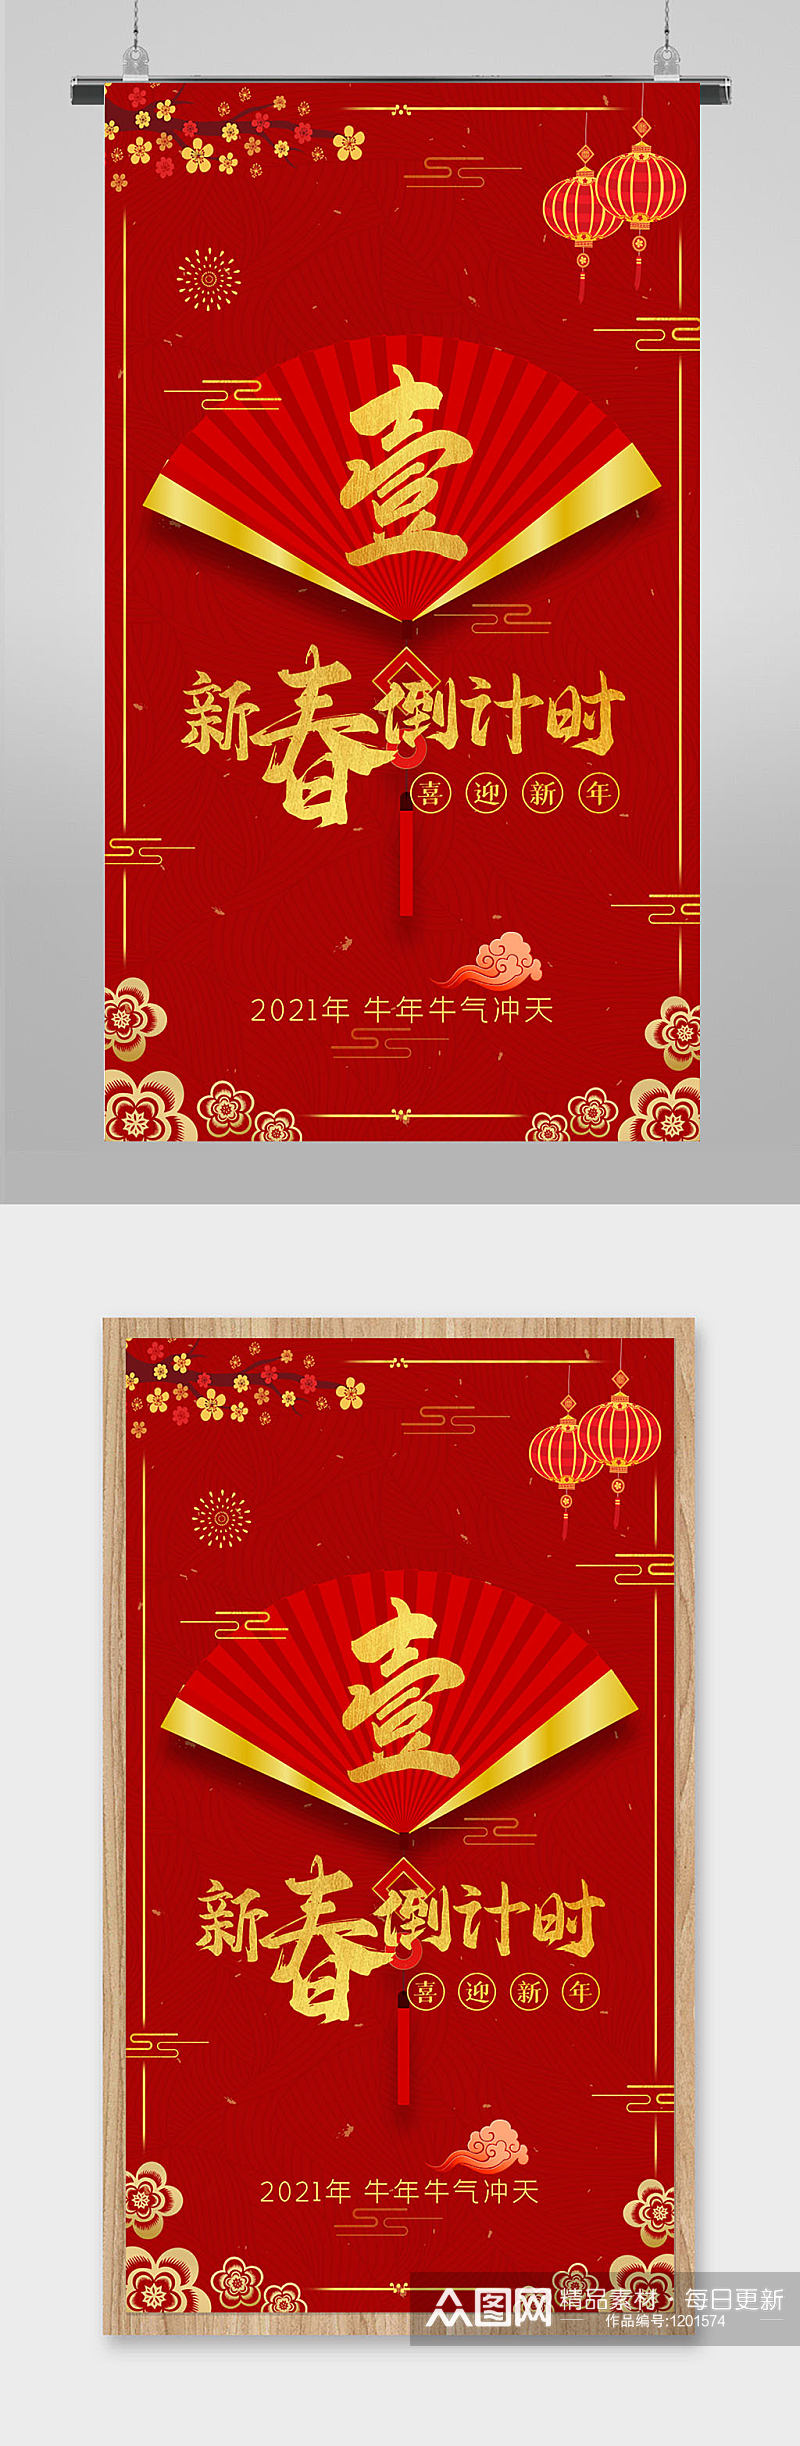 红色喜庆新年倒计时UI手机主题海报素材